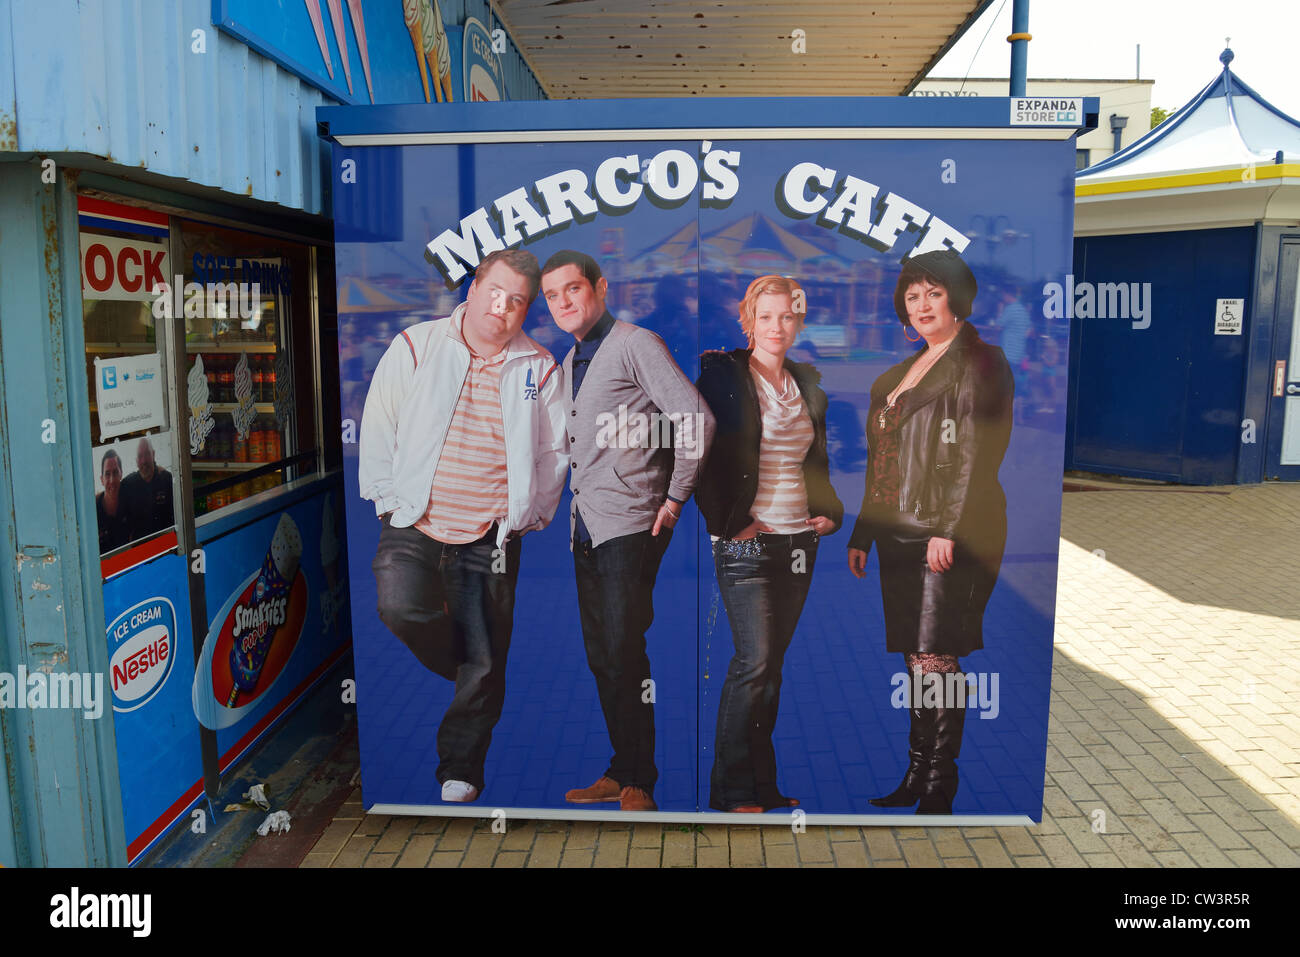 Panneau Marco's Cafe (dans le sitcom 'Gavin & Stacey'), Barry Island, Vale of Glamorgan, pays de Galles (Cymru), Royaume-Uni Banque D'Images